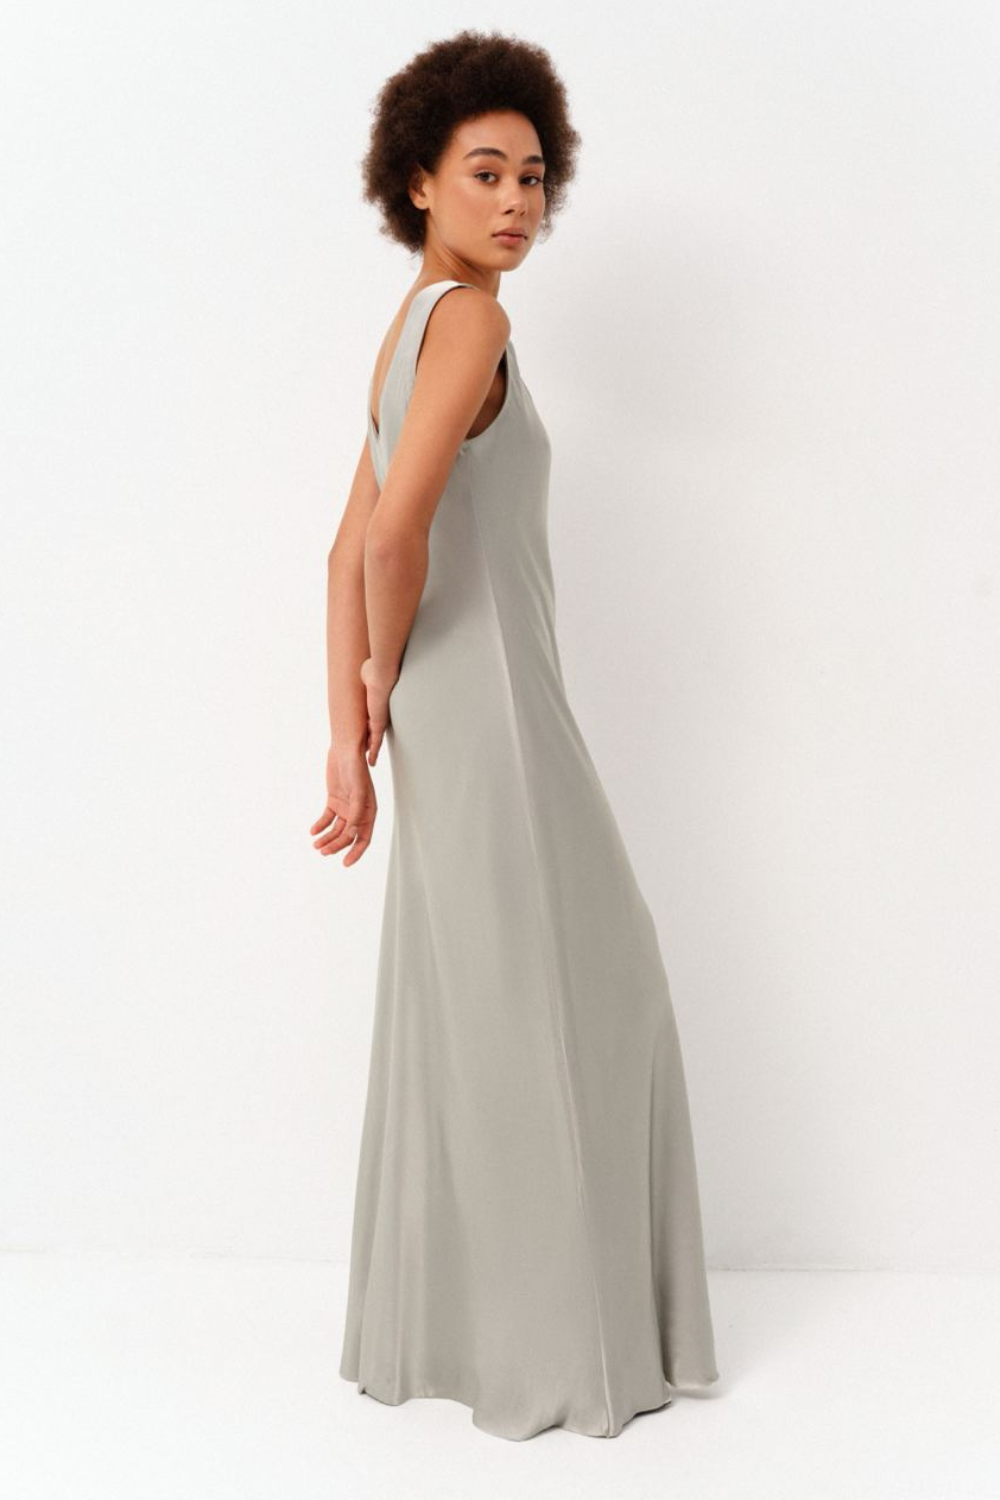 Šaty slip dress, olivová, (Corsis), 21-003O